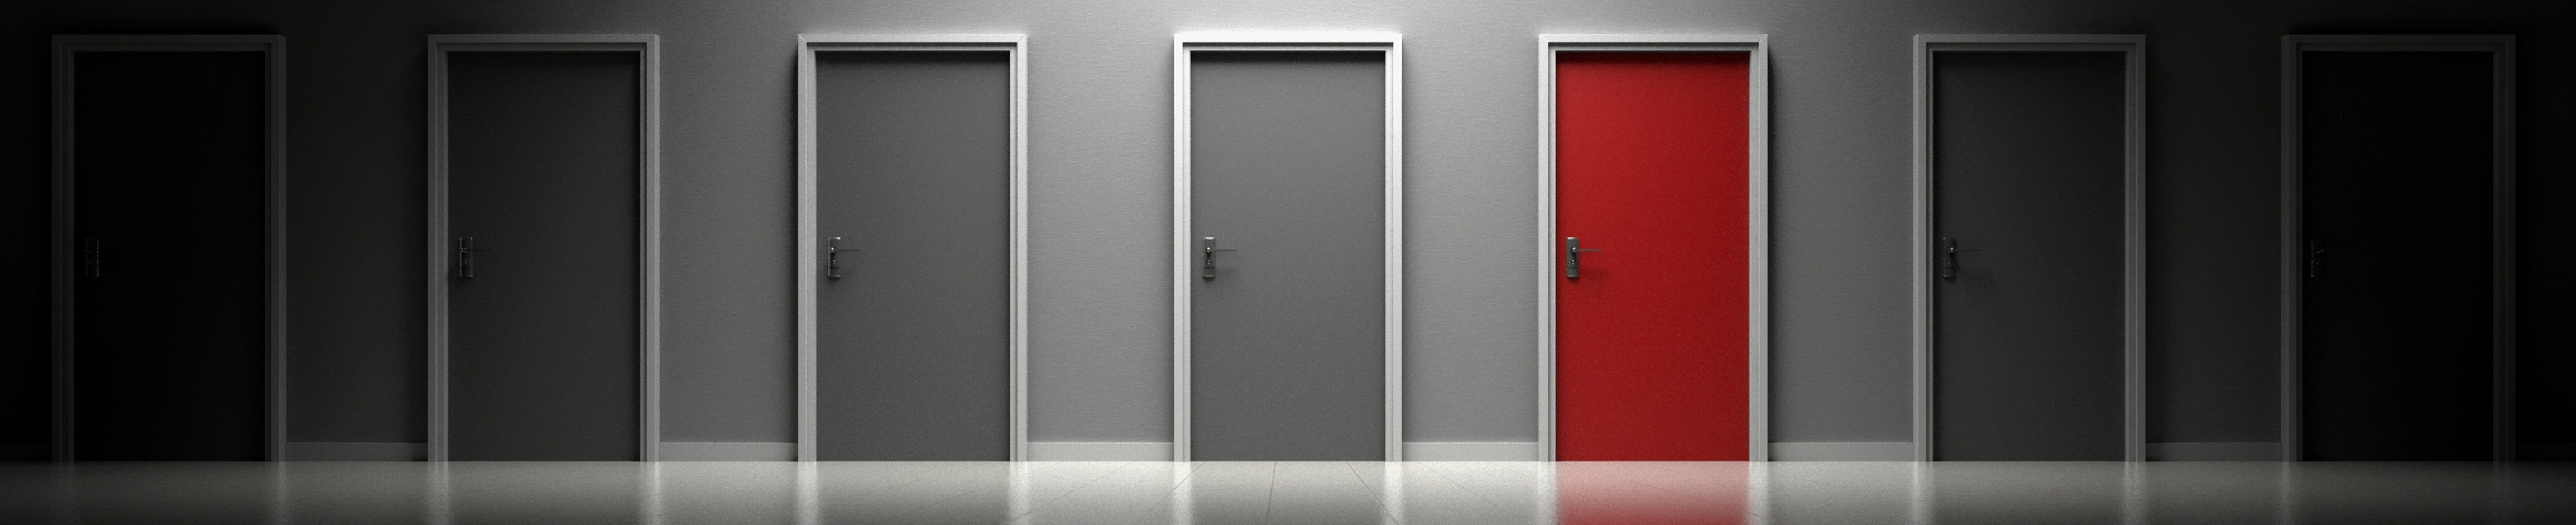 employment door